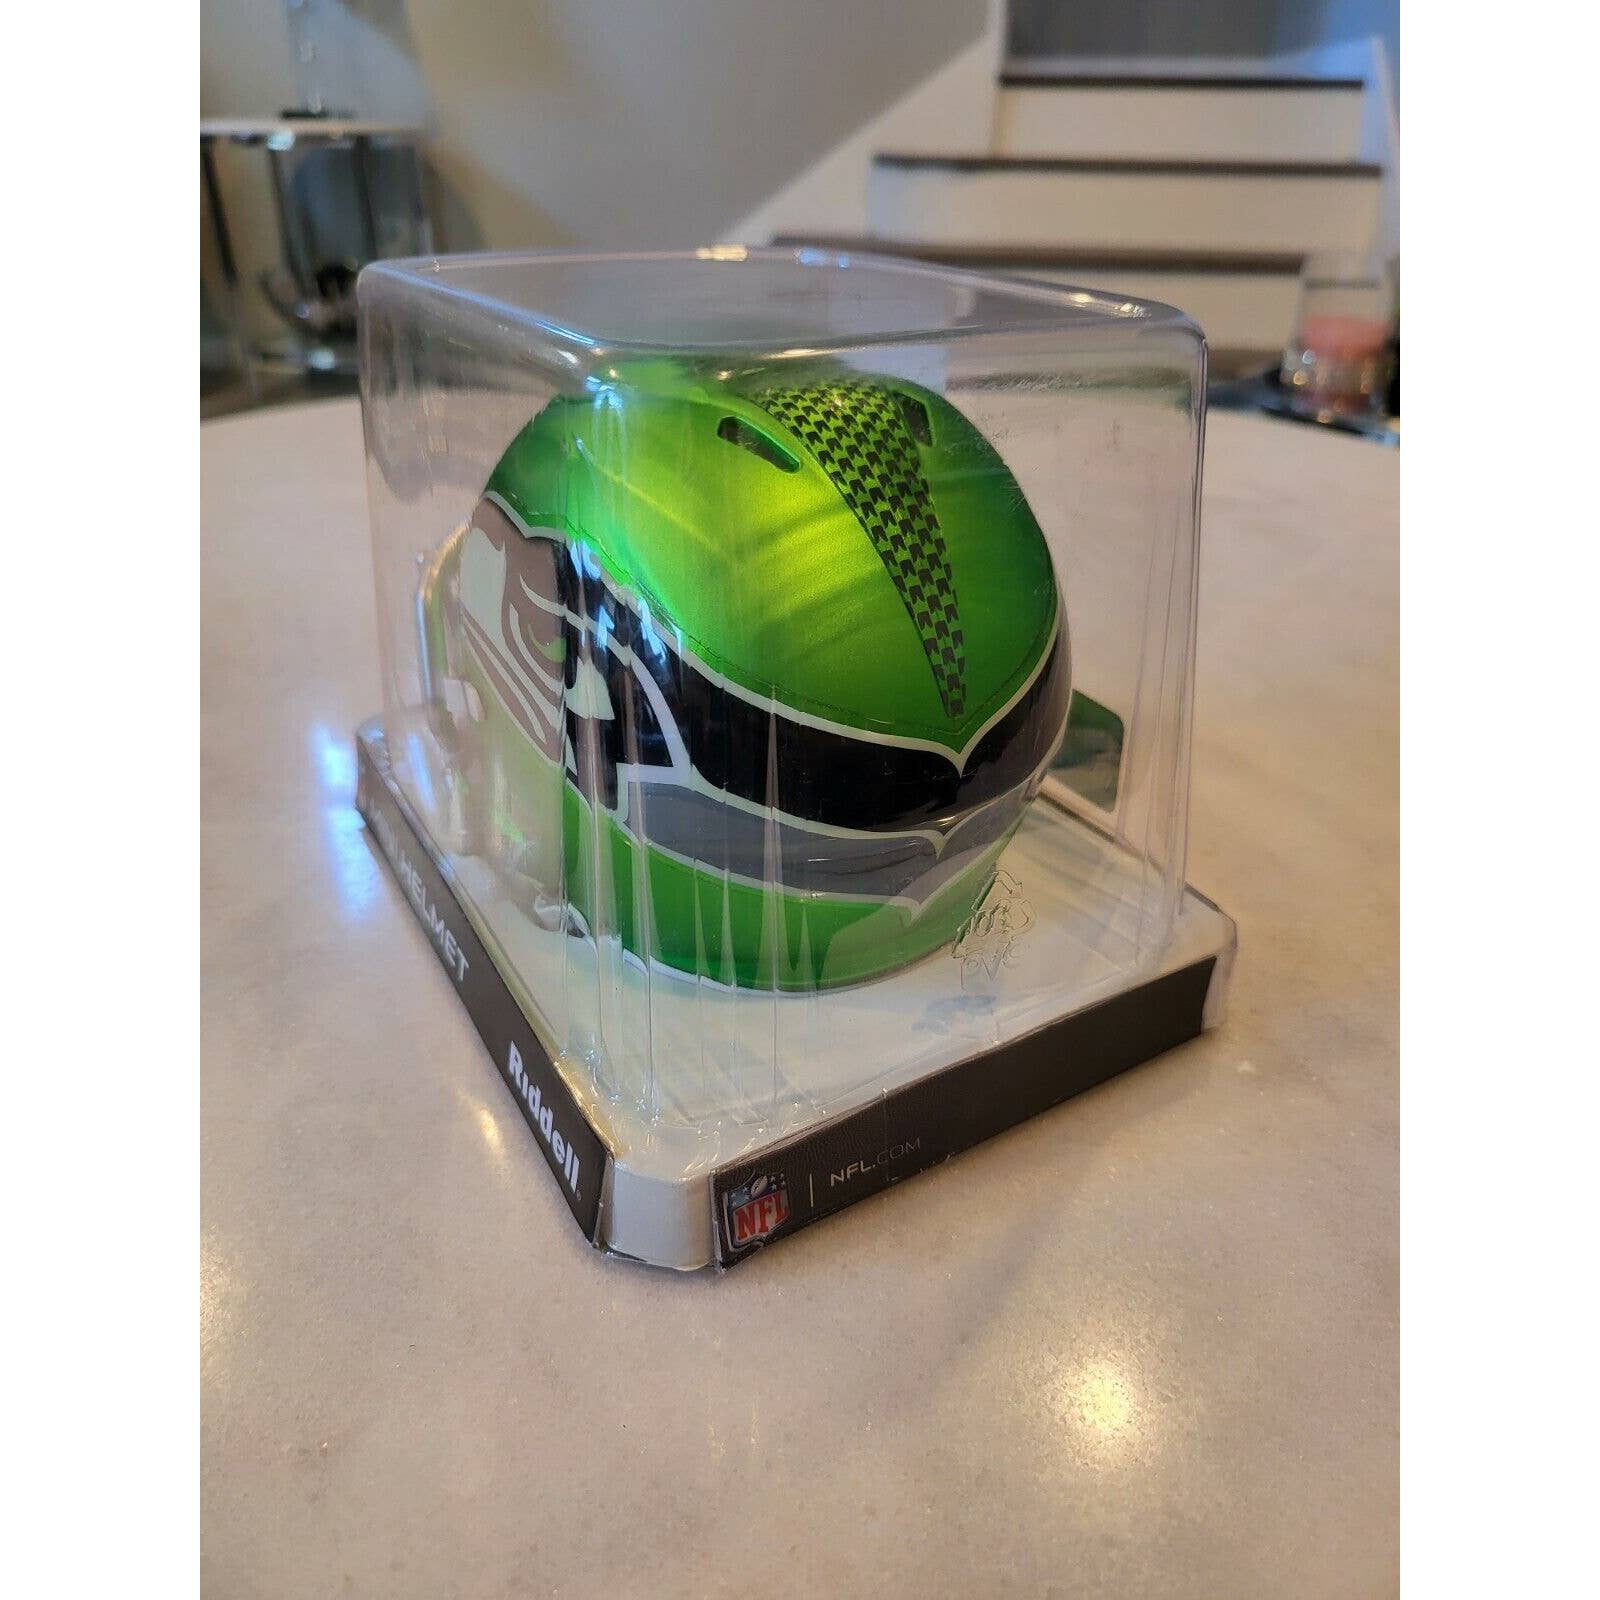 NIB Riddell NFL Blaze Speed Alternate Seattle Seahawks Mini-Helmet A - TreasuresEvolved